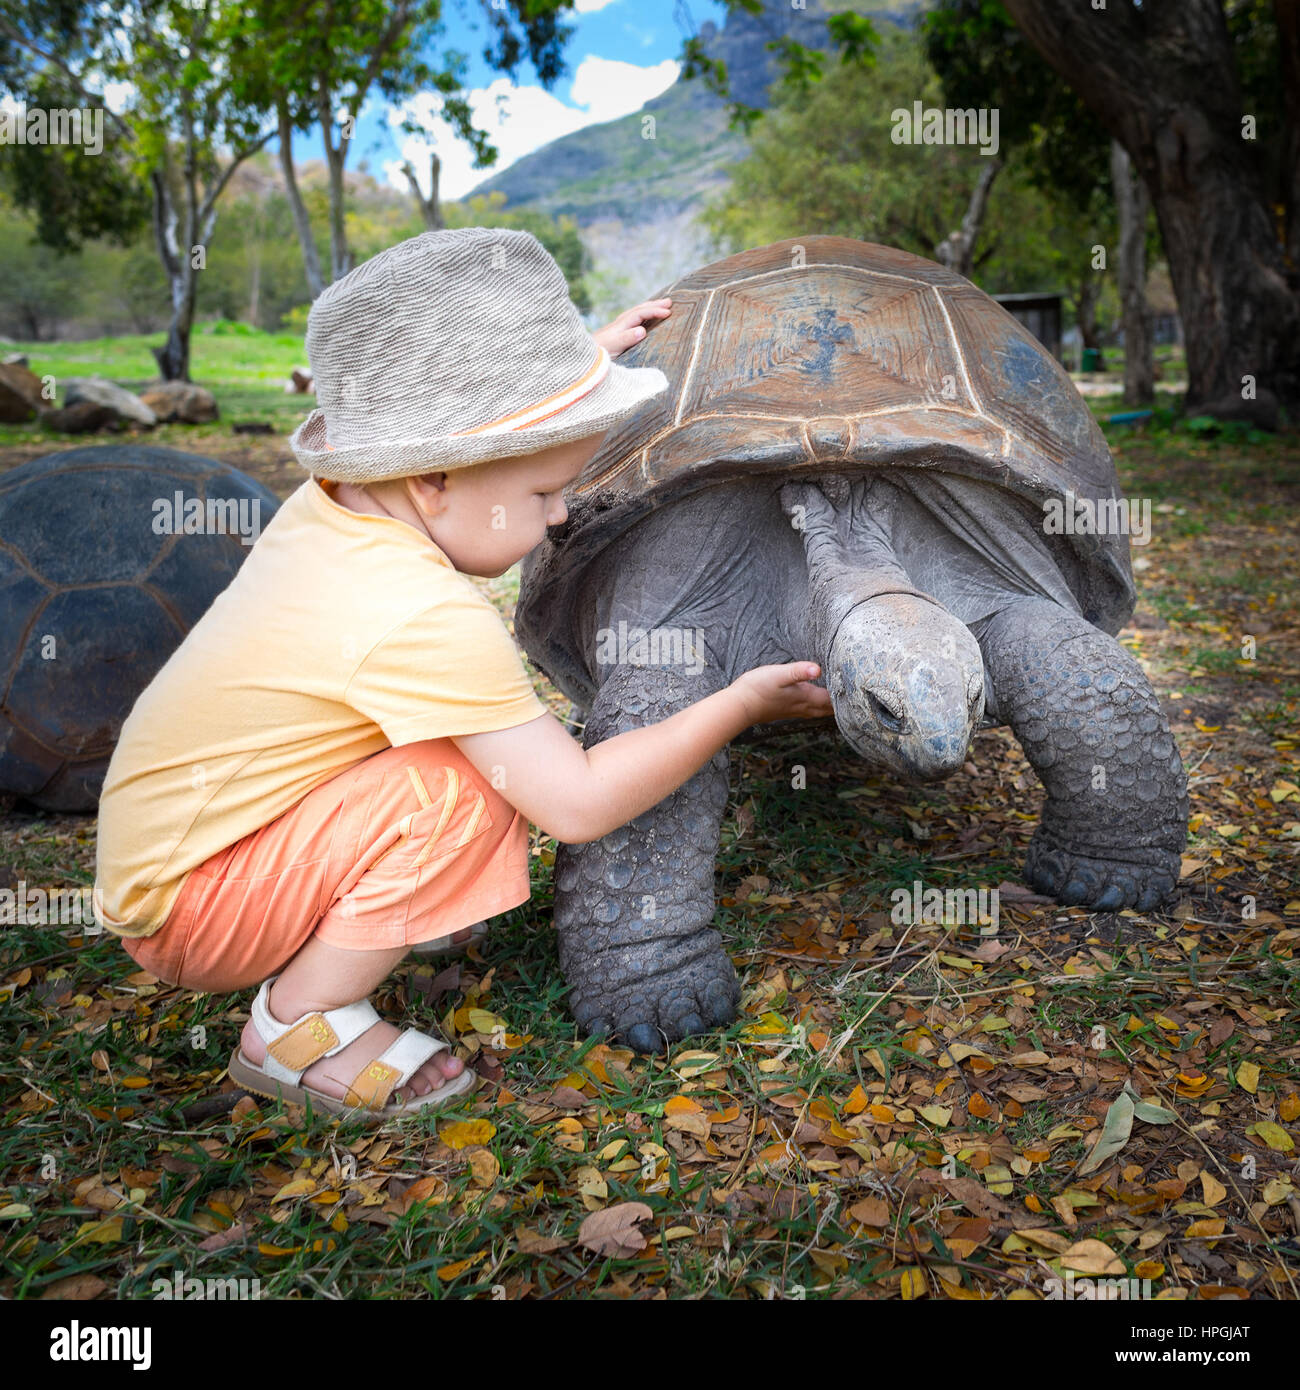 Tortue géante d'Aldabra touchant l'enfant. L'Ile Maurice Banque D'Images